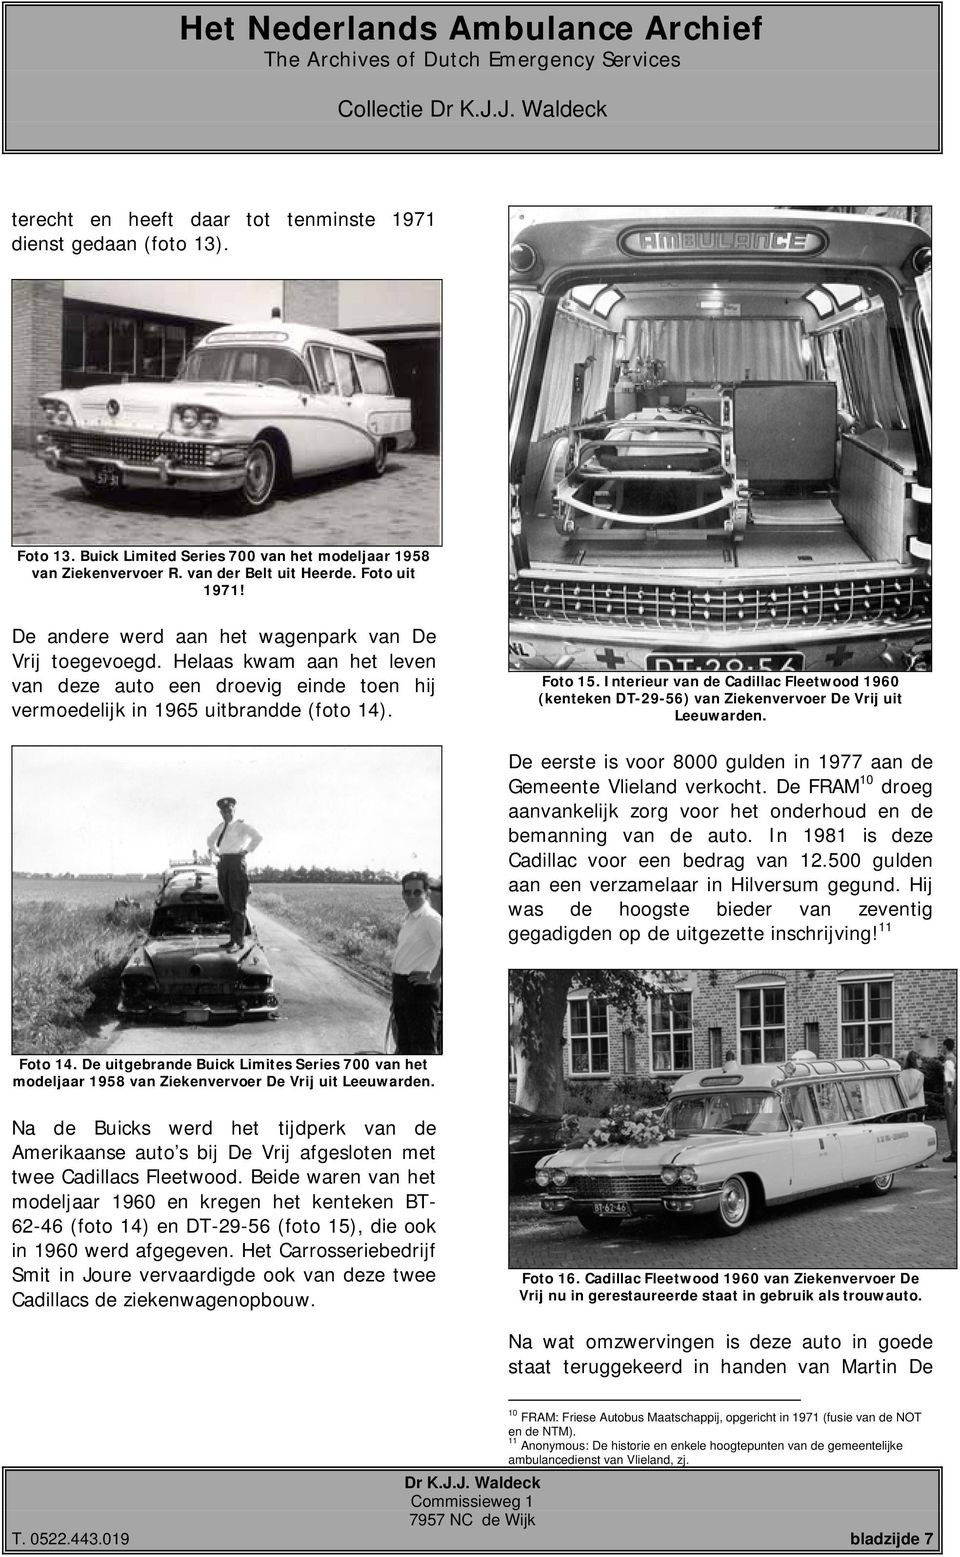 Interieur van de Cadillac Fleetwood 1960 (kenteken DT-29-56) van Ziekenvervoer De Vrij uit Leeuwarden. De eerste is voor 8000 gulden in 1977 aan de Gemeente Vlieland verkocht.